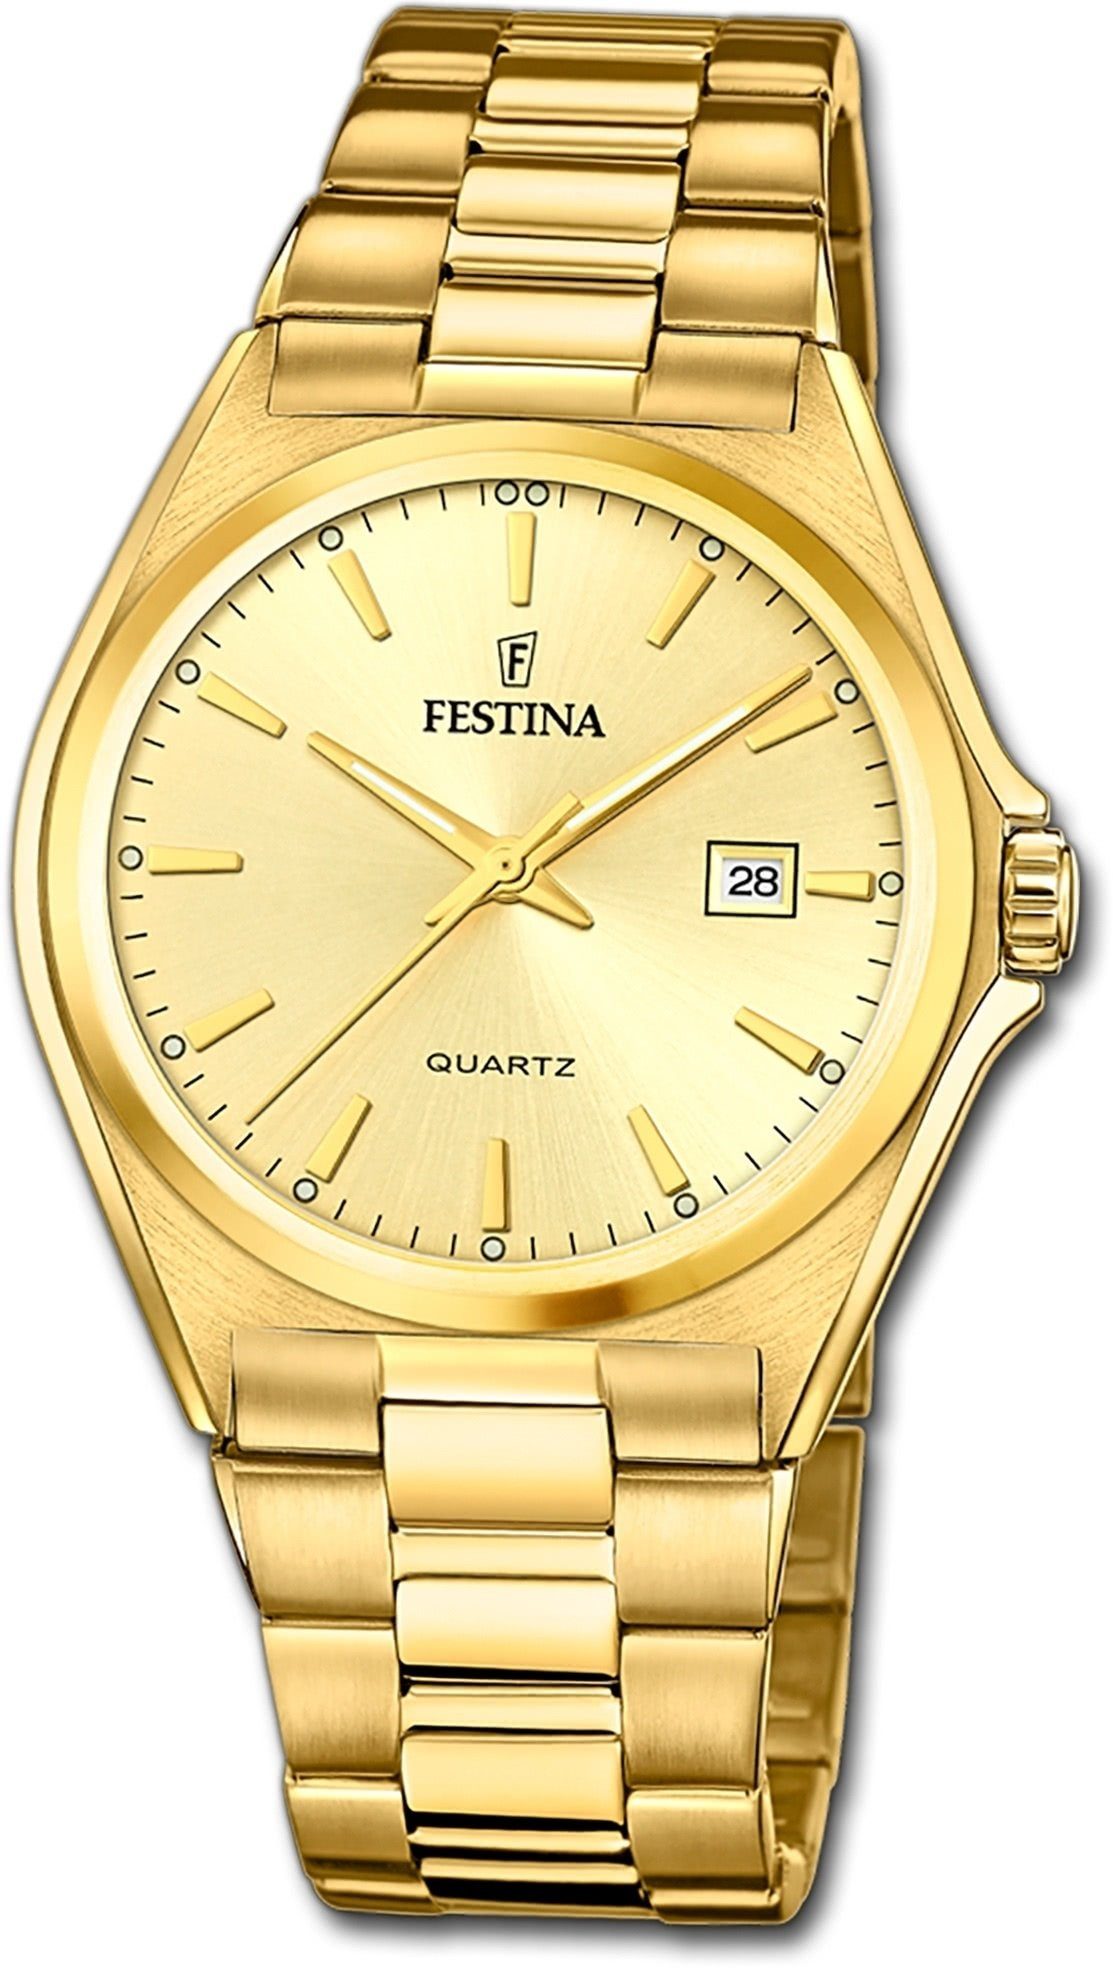 Festina Quarzuhr Festina Herrenuhr Klassik Armbanduhr, Herrenuhr Edelstahlarmband gold, rund, groß (ca. 40mm) | Quarzuhren